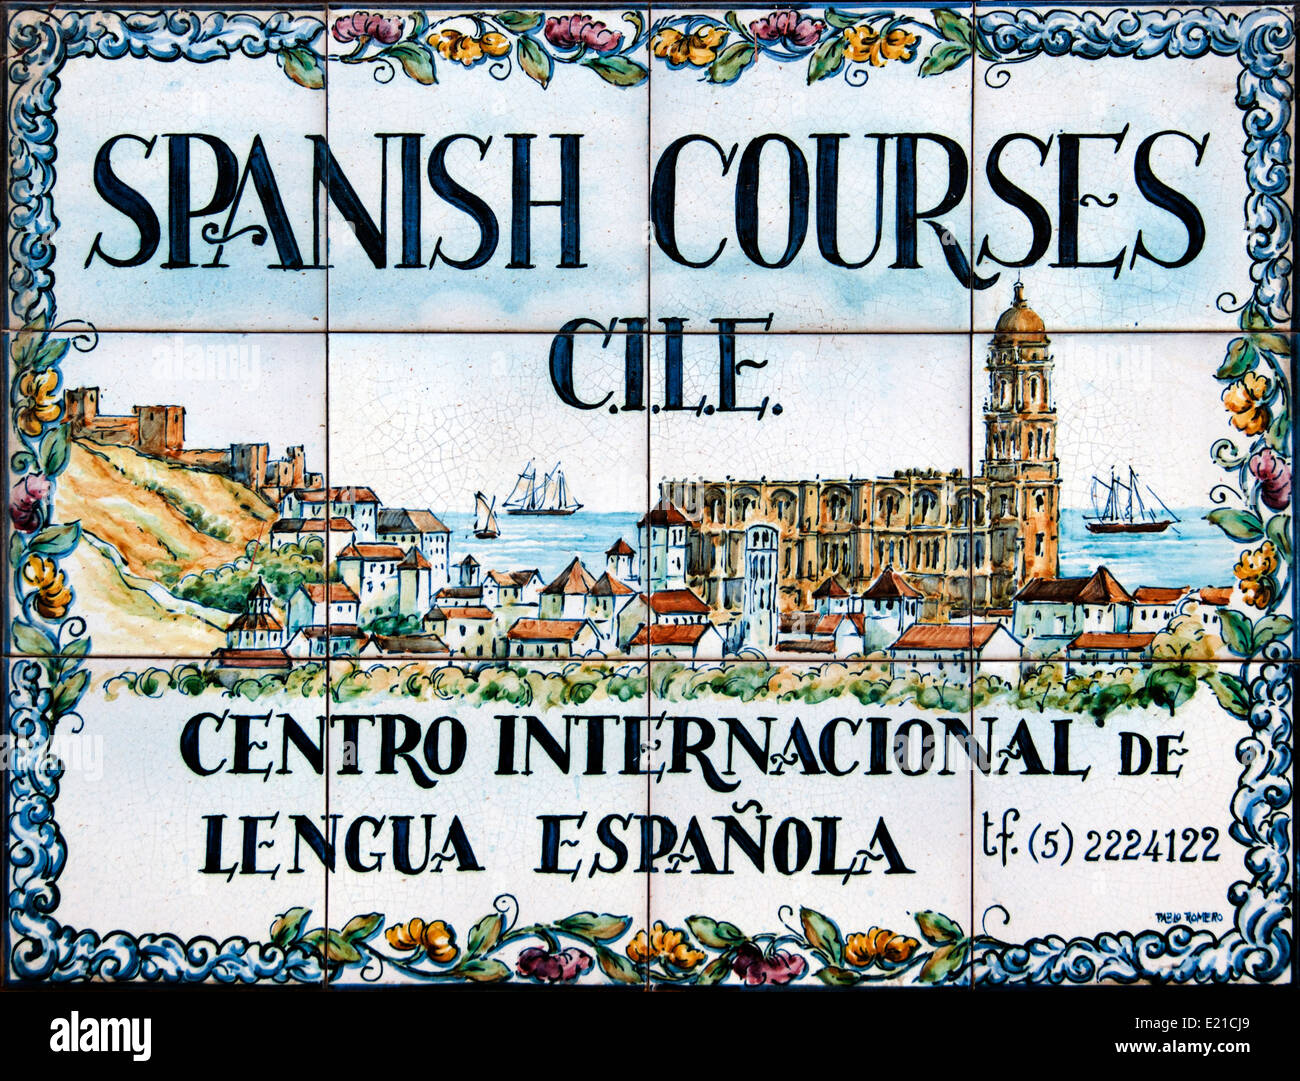 Spanish Courses centro internacional de lengua Española -  Courses Spanish language international center Andalusia Stock Photo